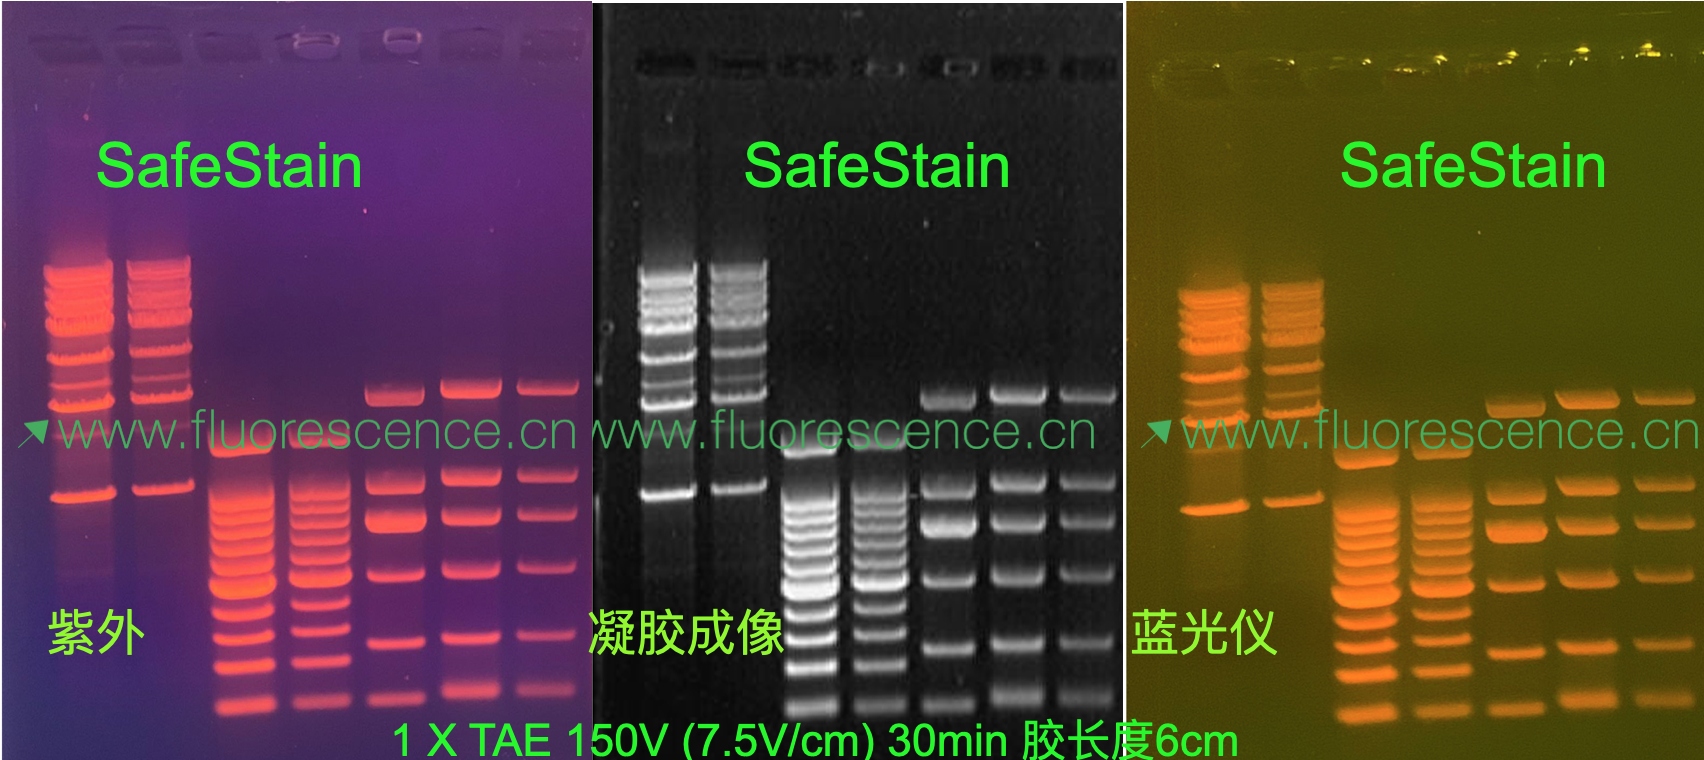 第四代核酸染料SafeStain®同时适用紫外成像仪/激光成像仪和蓝光仪,Page胶肉眼可观测